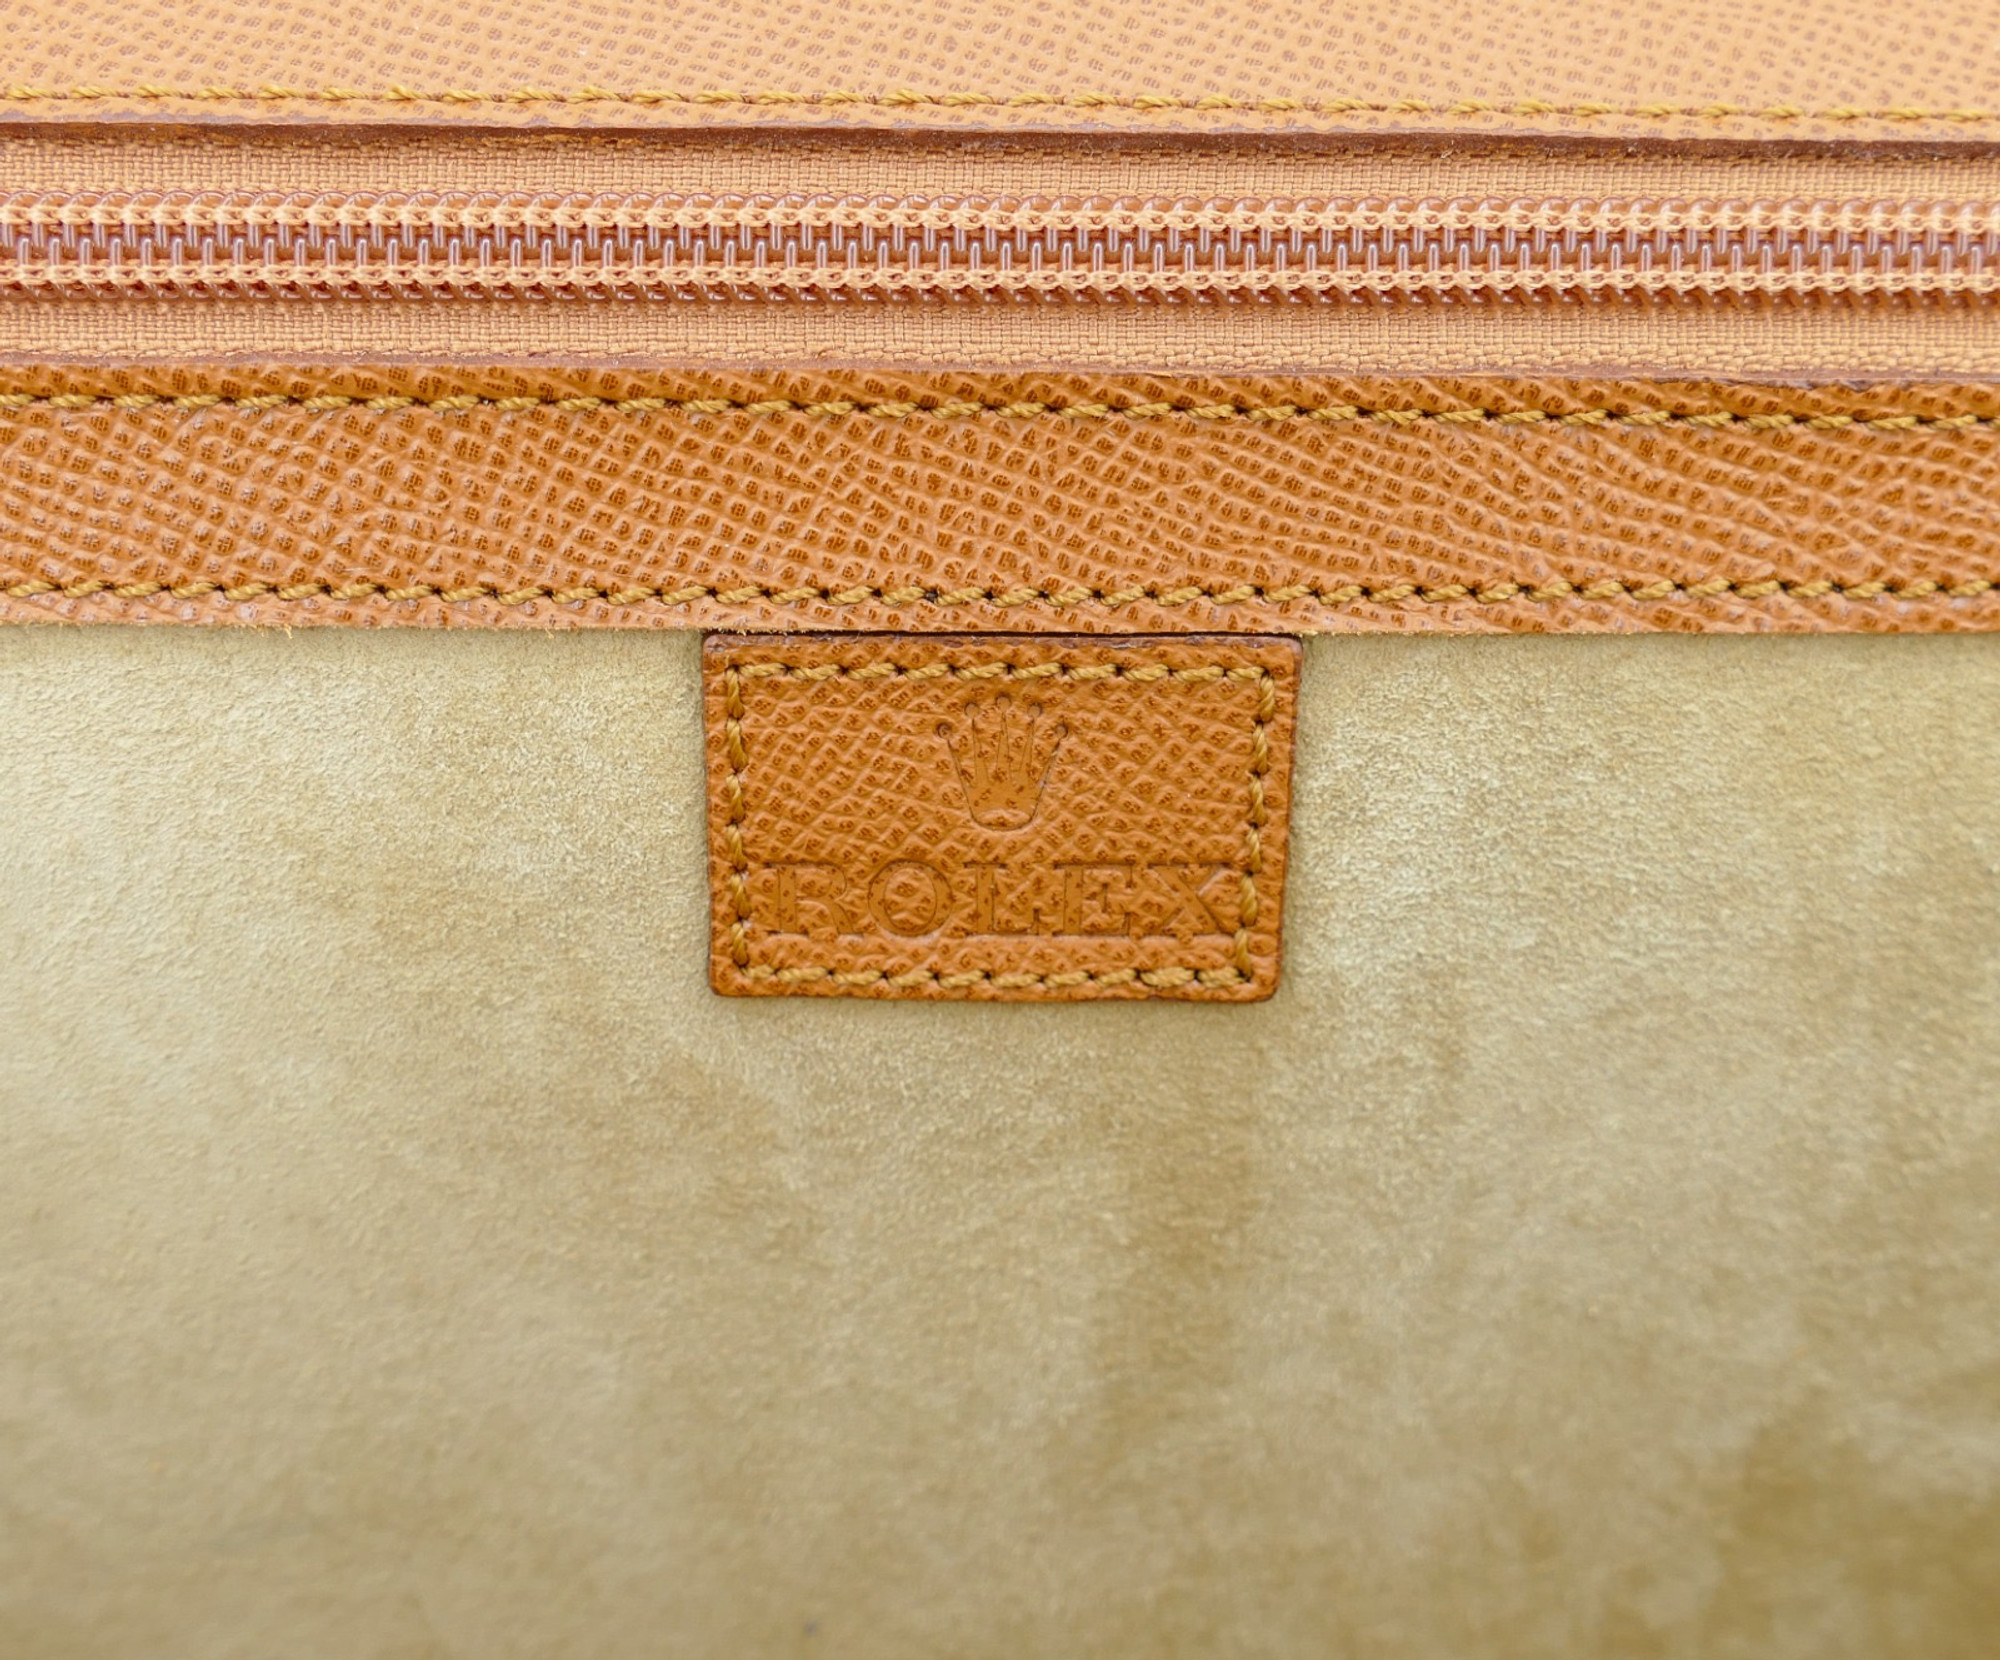  Rolex Leather Attache Case